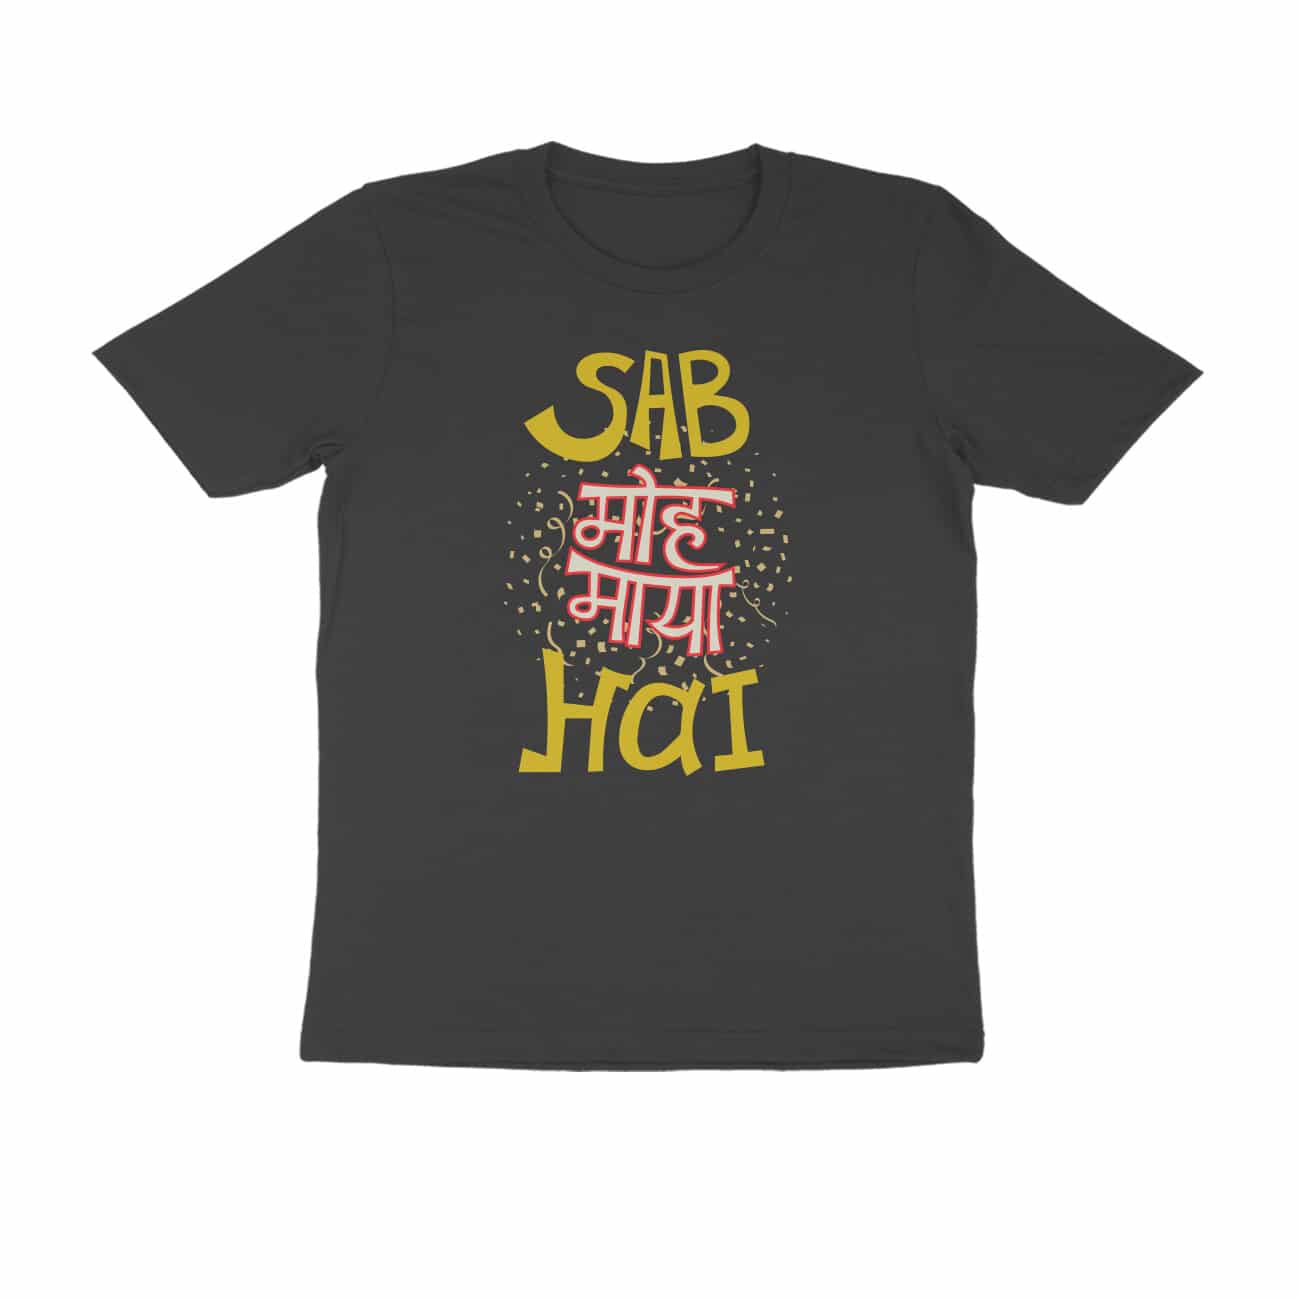 Sab moh maya hai gold yellow, Hindi Quotes and Slogan T-Shirt - Manmarzee